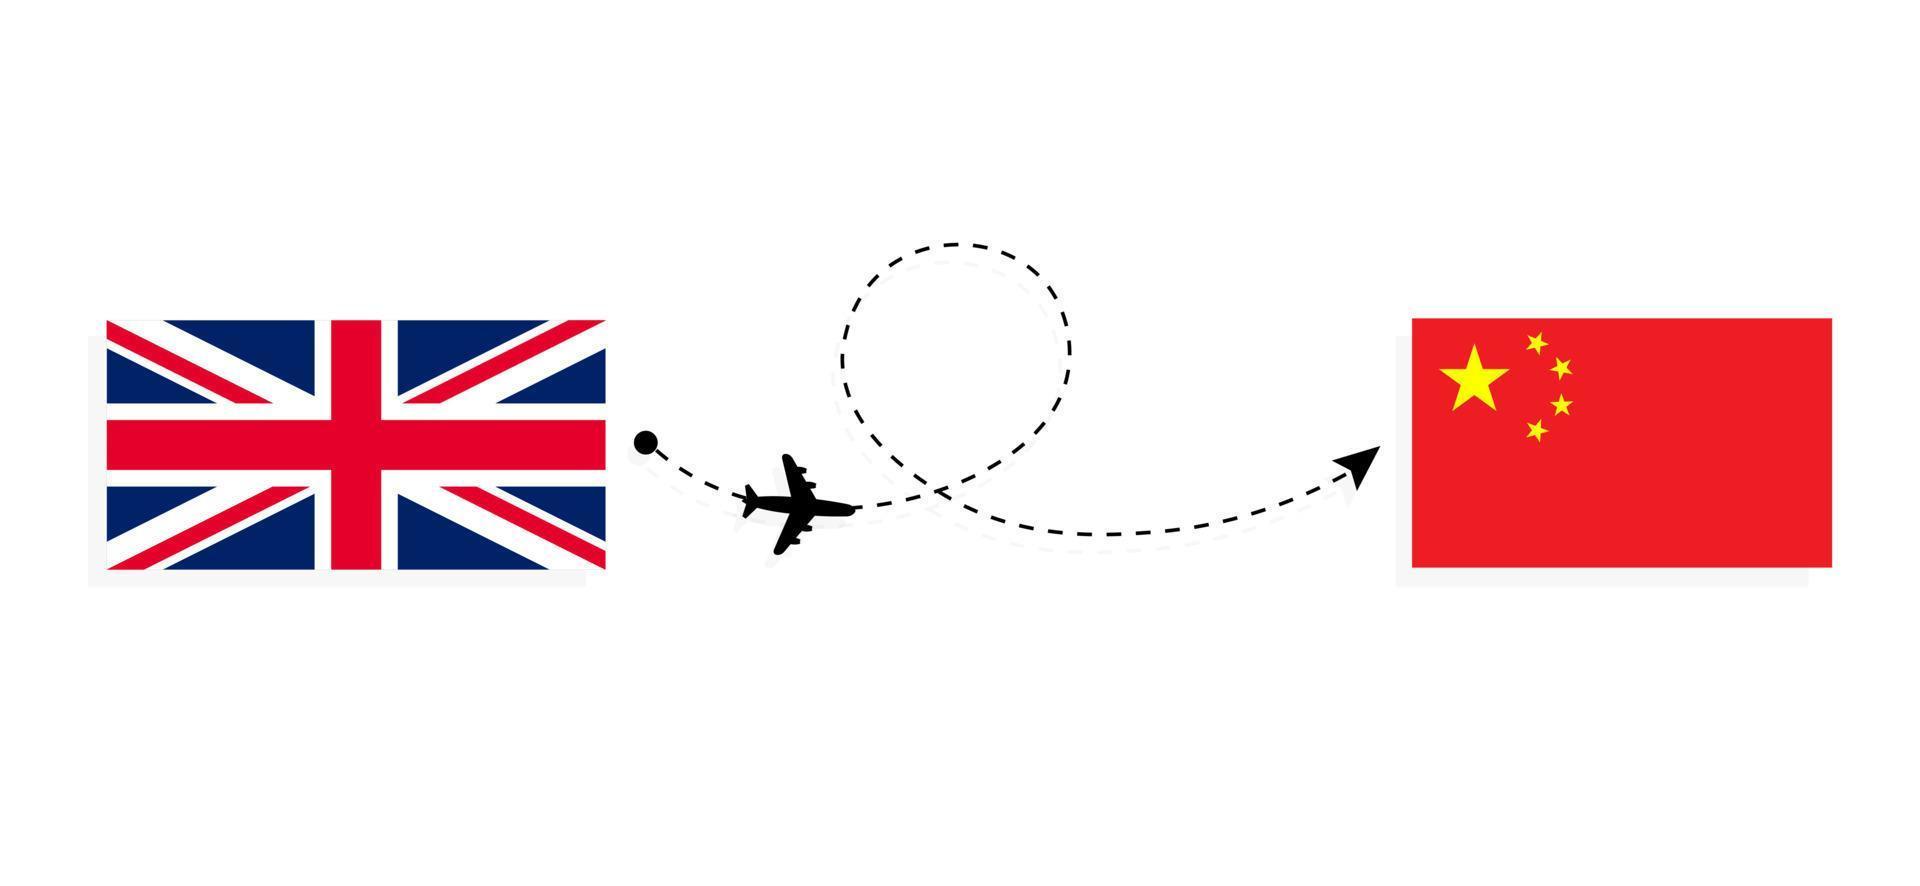 flyg och resor från Storbritannien till Kina med passagerarflygplan vektor